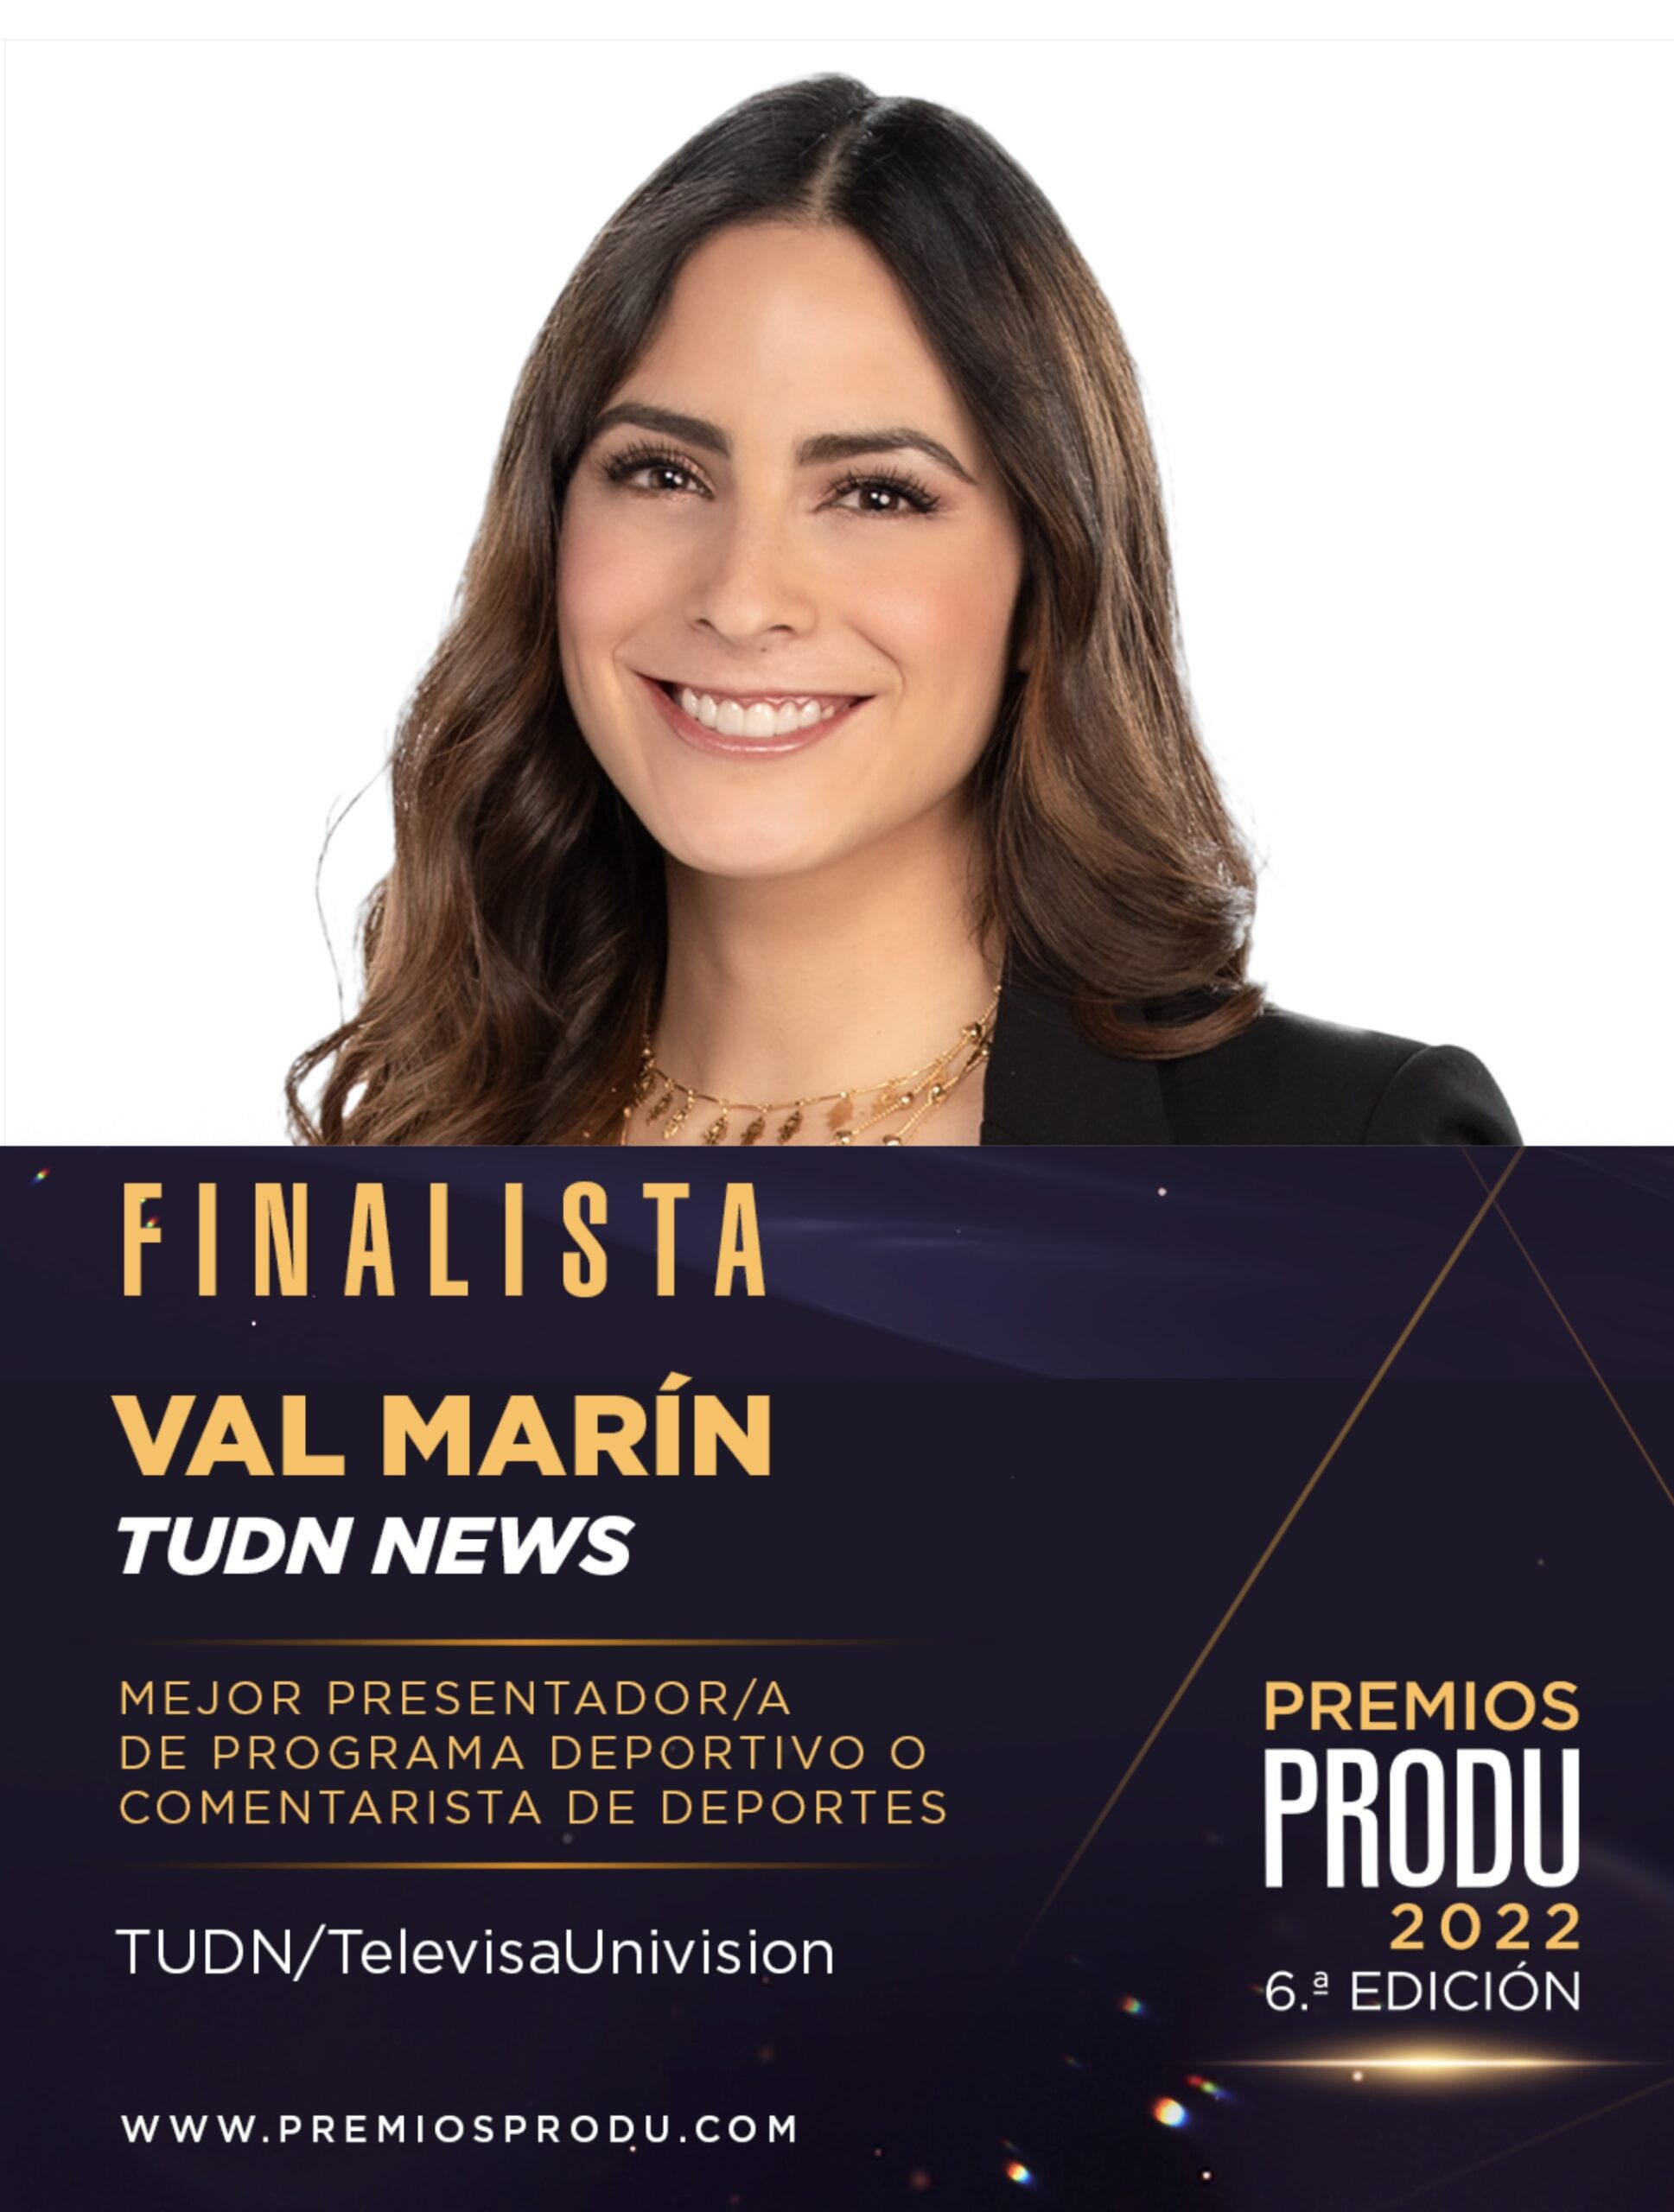 VALERIA MARÍN nominada ‘Mejor Presentadora de Programa Deportivo’ en Premios PRODU 2022